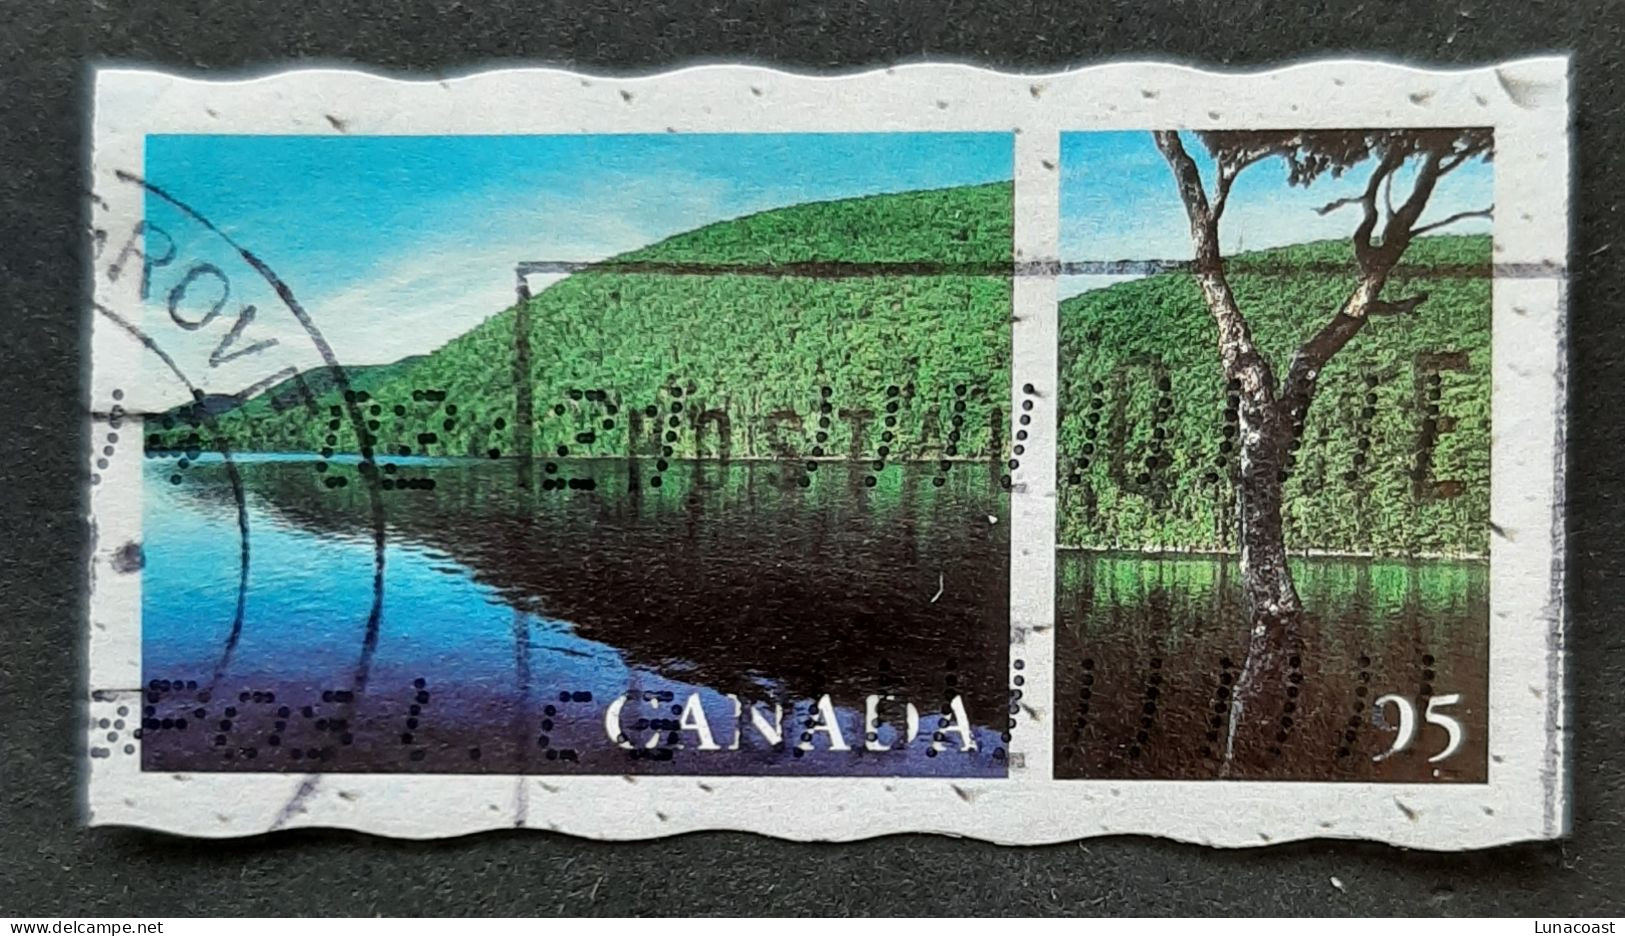 Canada 2000  USED Sc 1855e   95c  Cape Breton Island, NS - Used Stamps